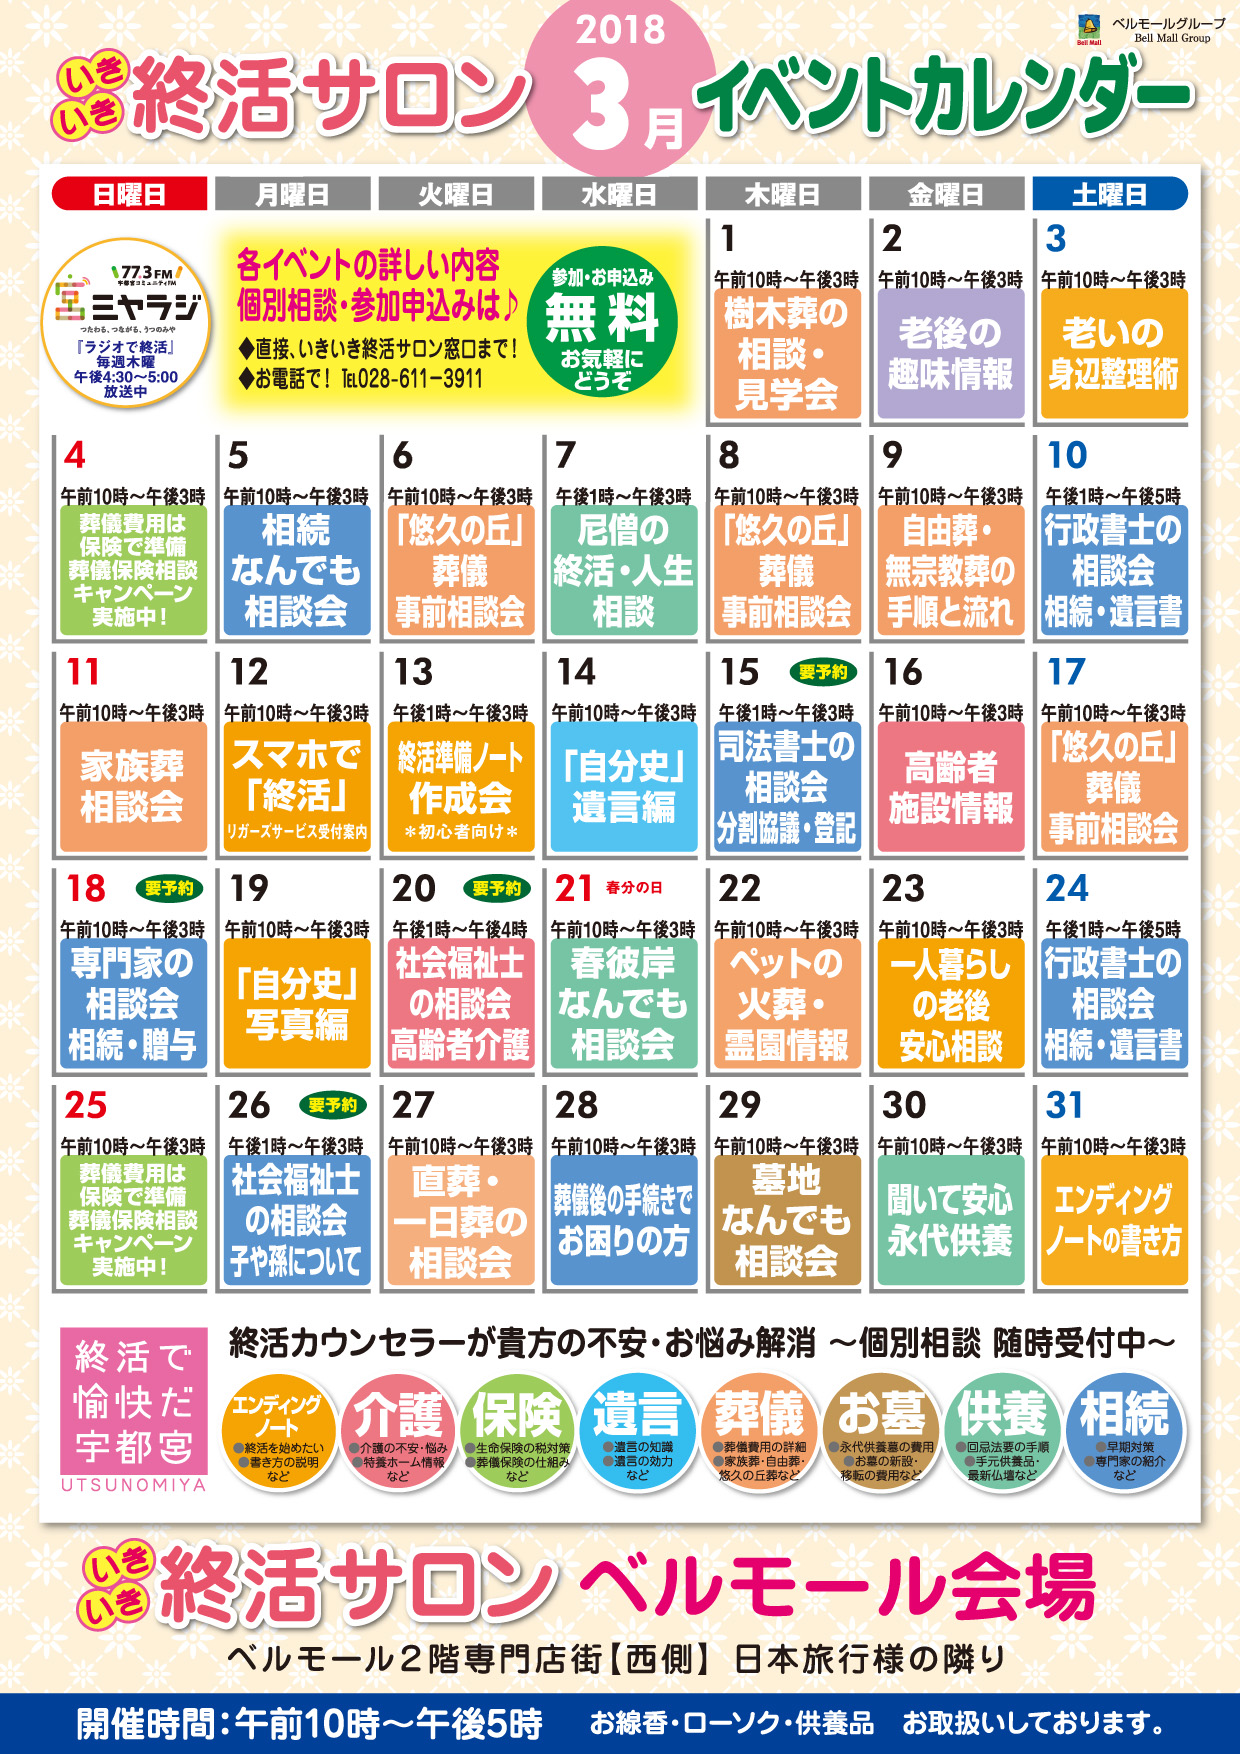 いきいき終活サロン3月イベントカレンダー